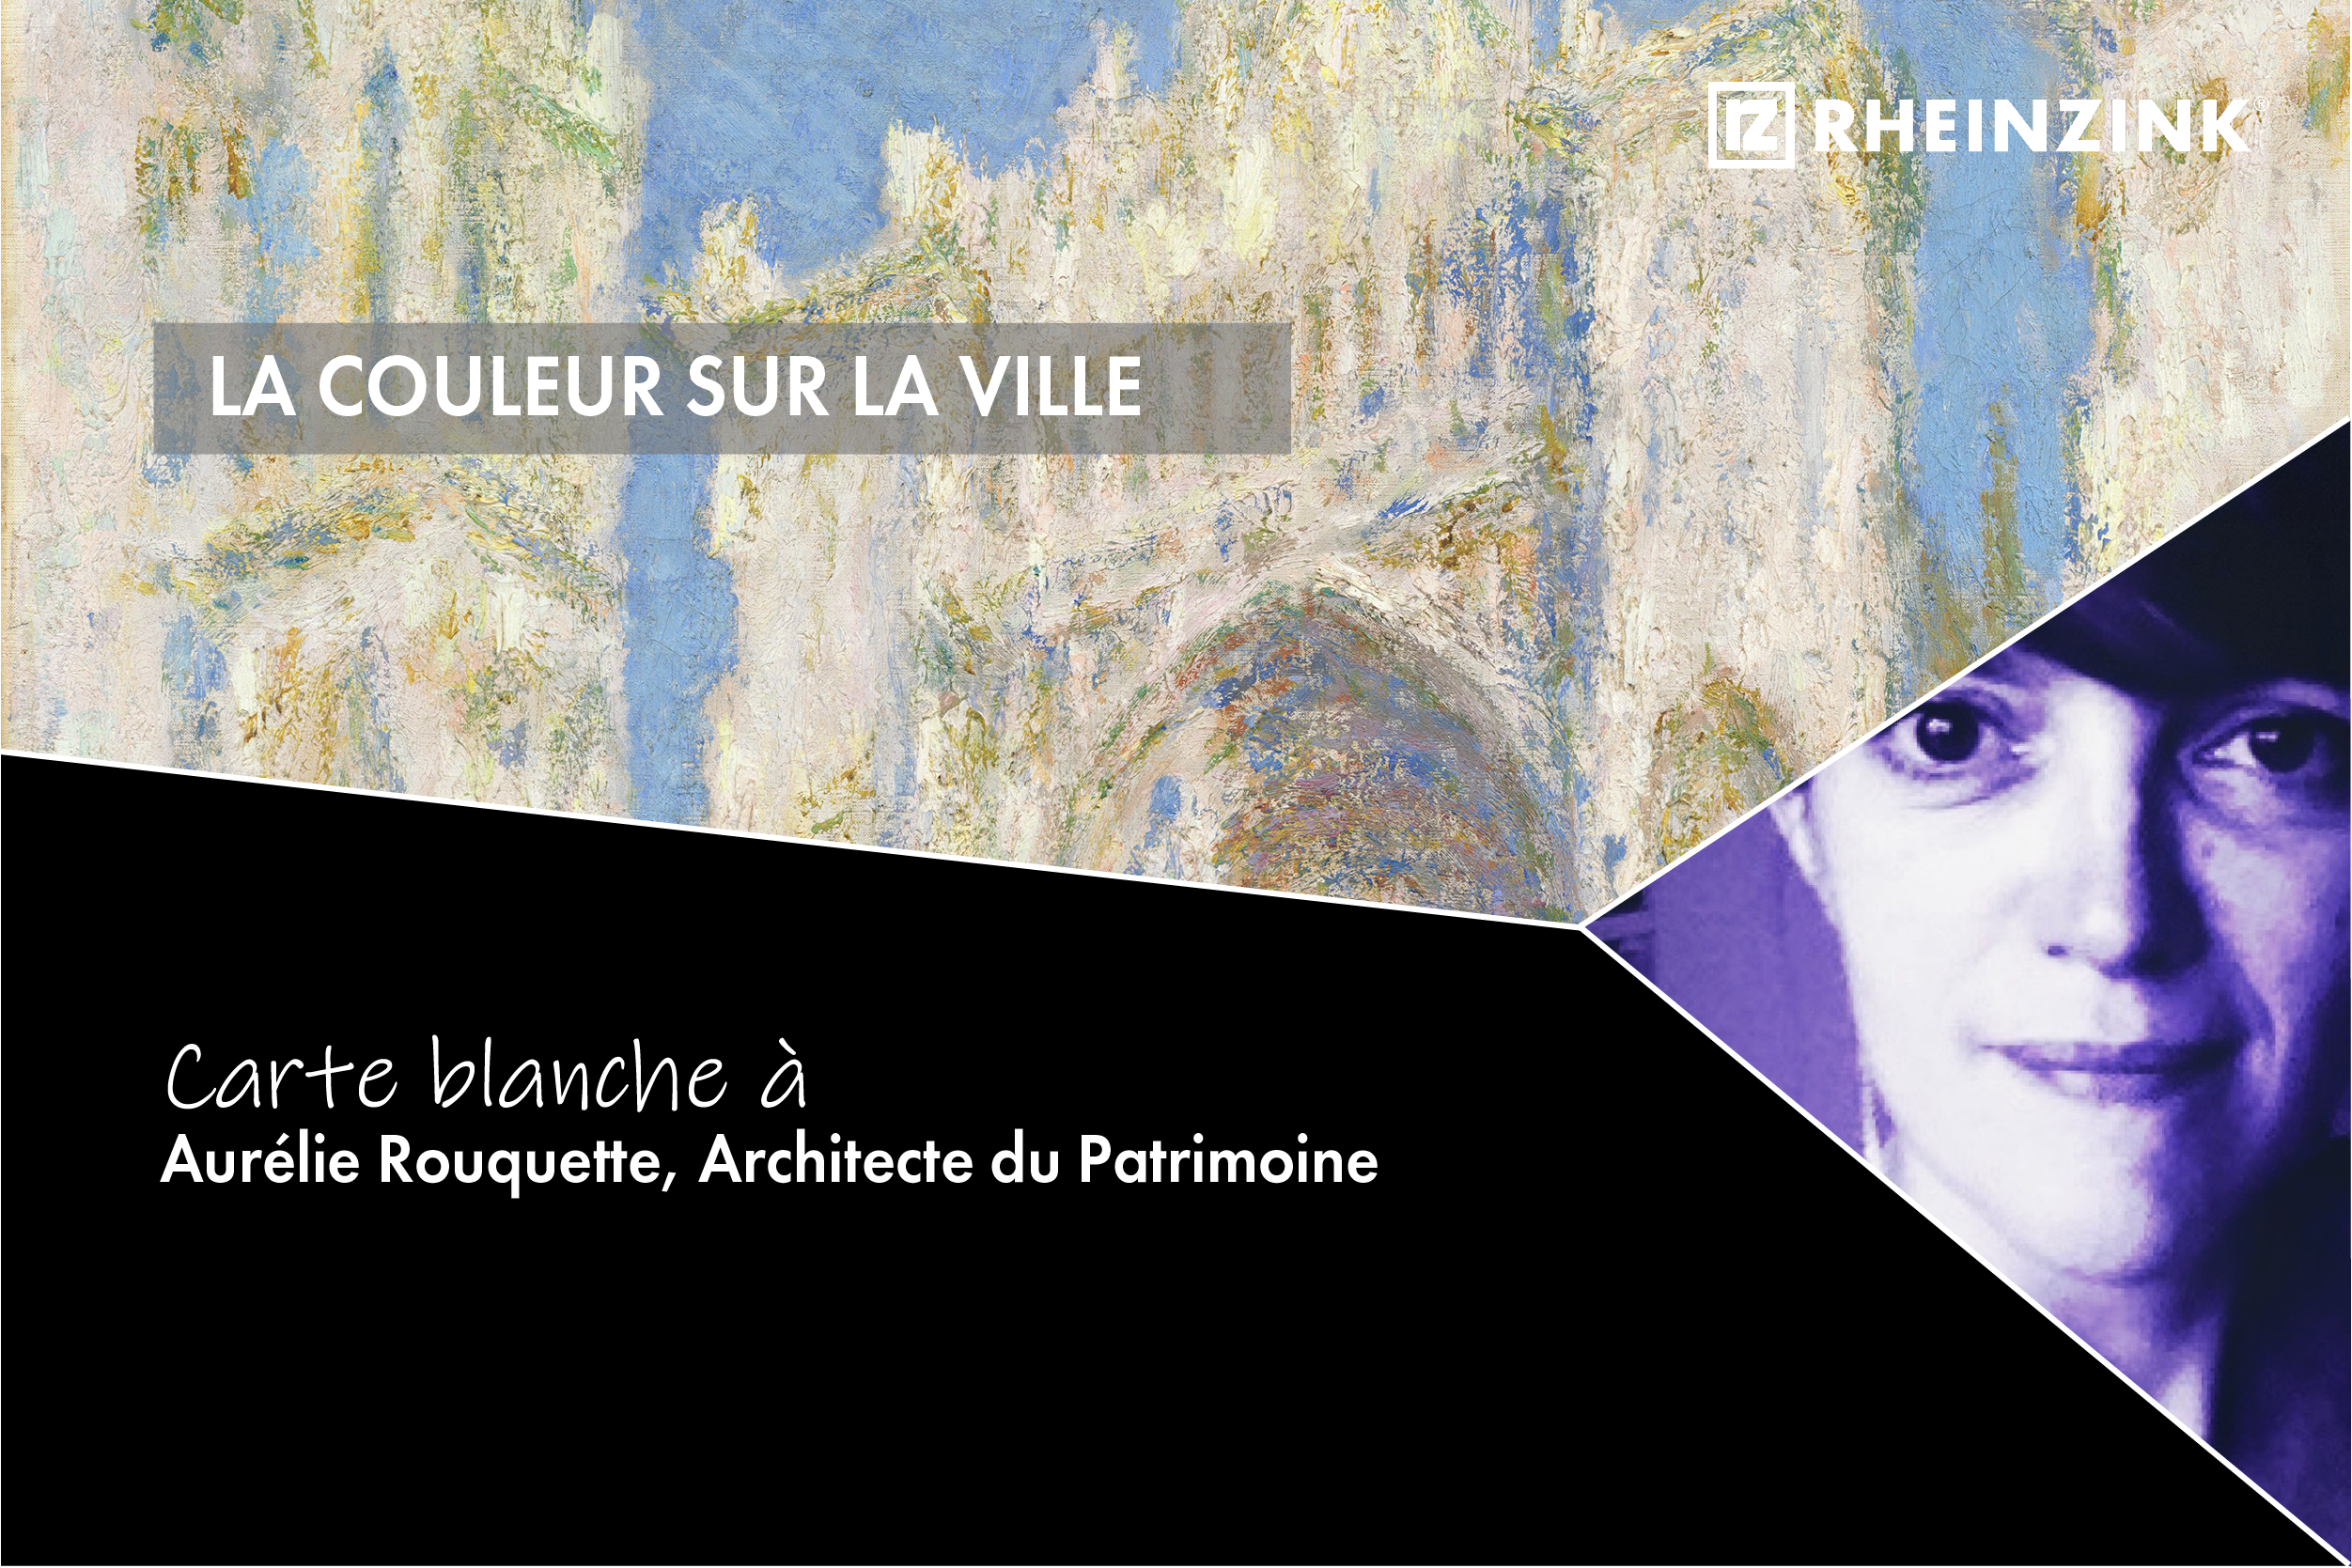 La couleur sur la ville : Carte blanche à Aurélie Rouquette, Architecte du patrimoine